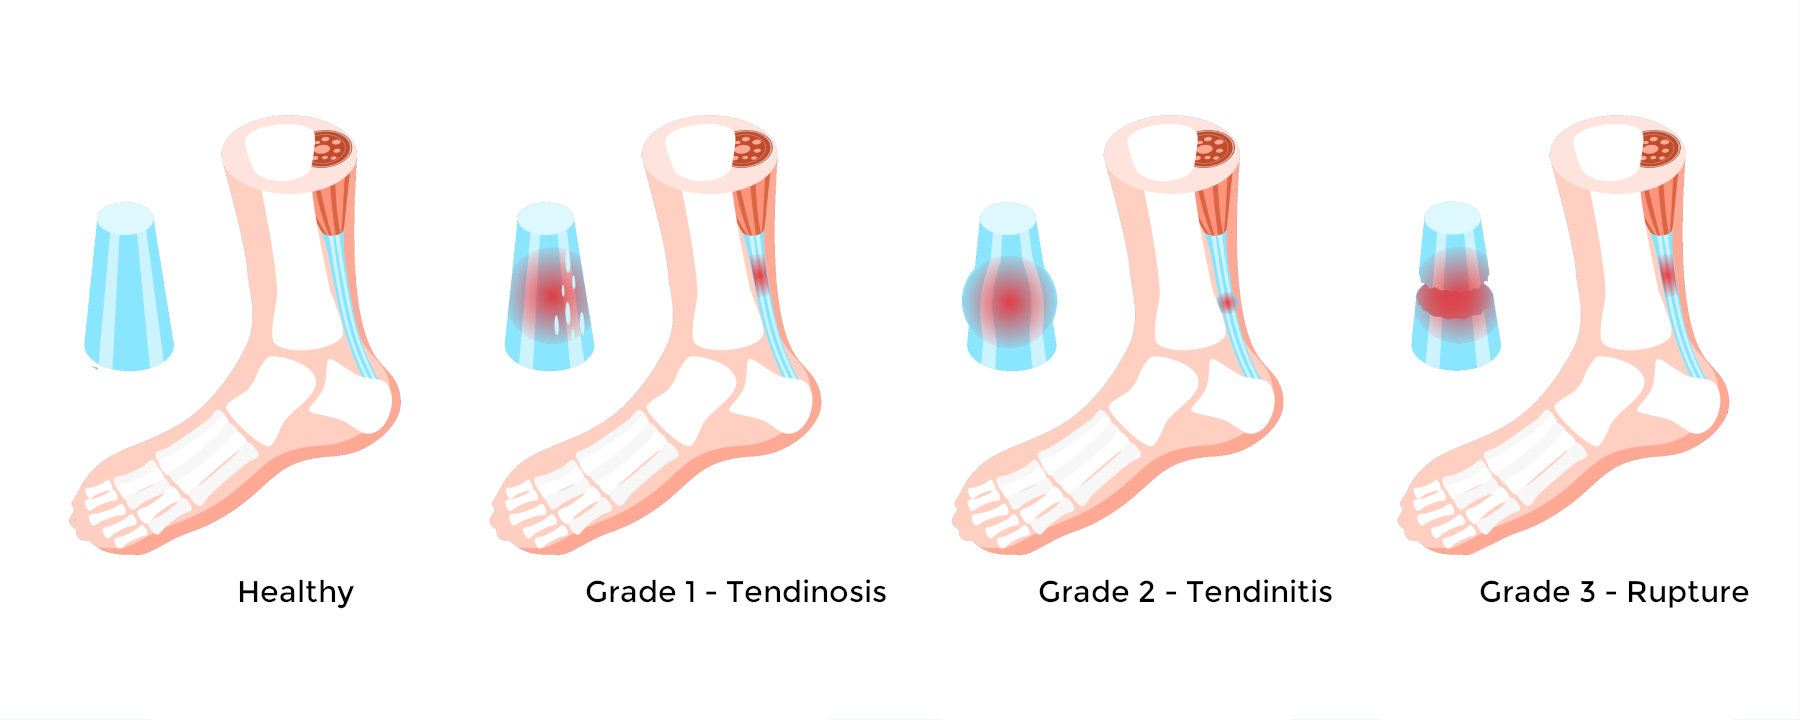 Achilles tendon grades infographic